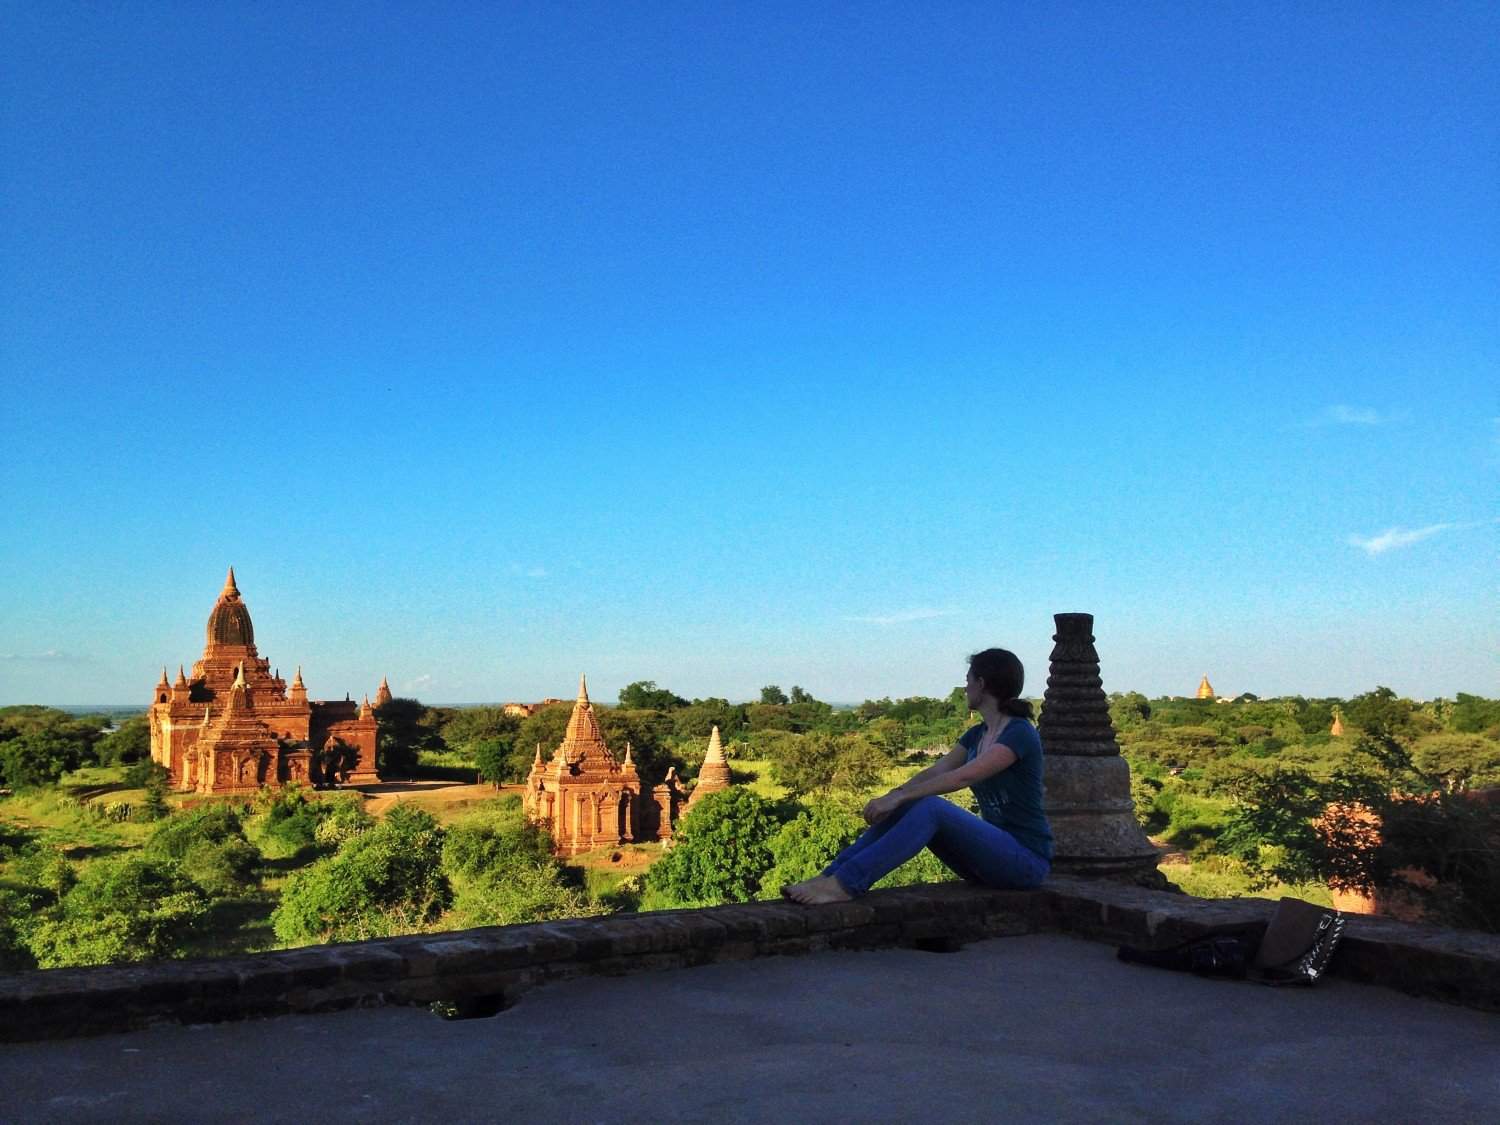 Lauren at Bagan